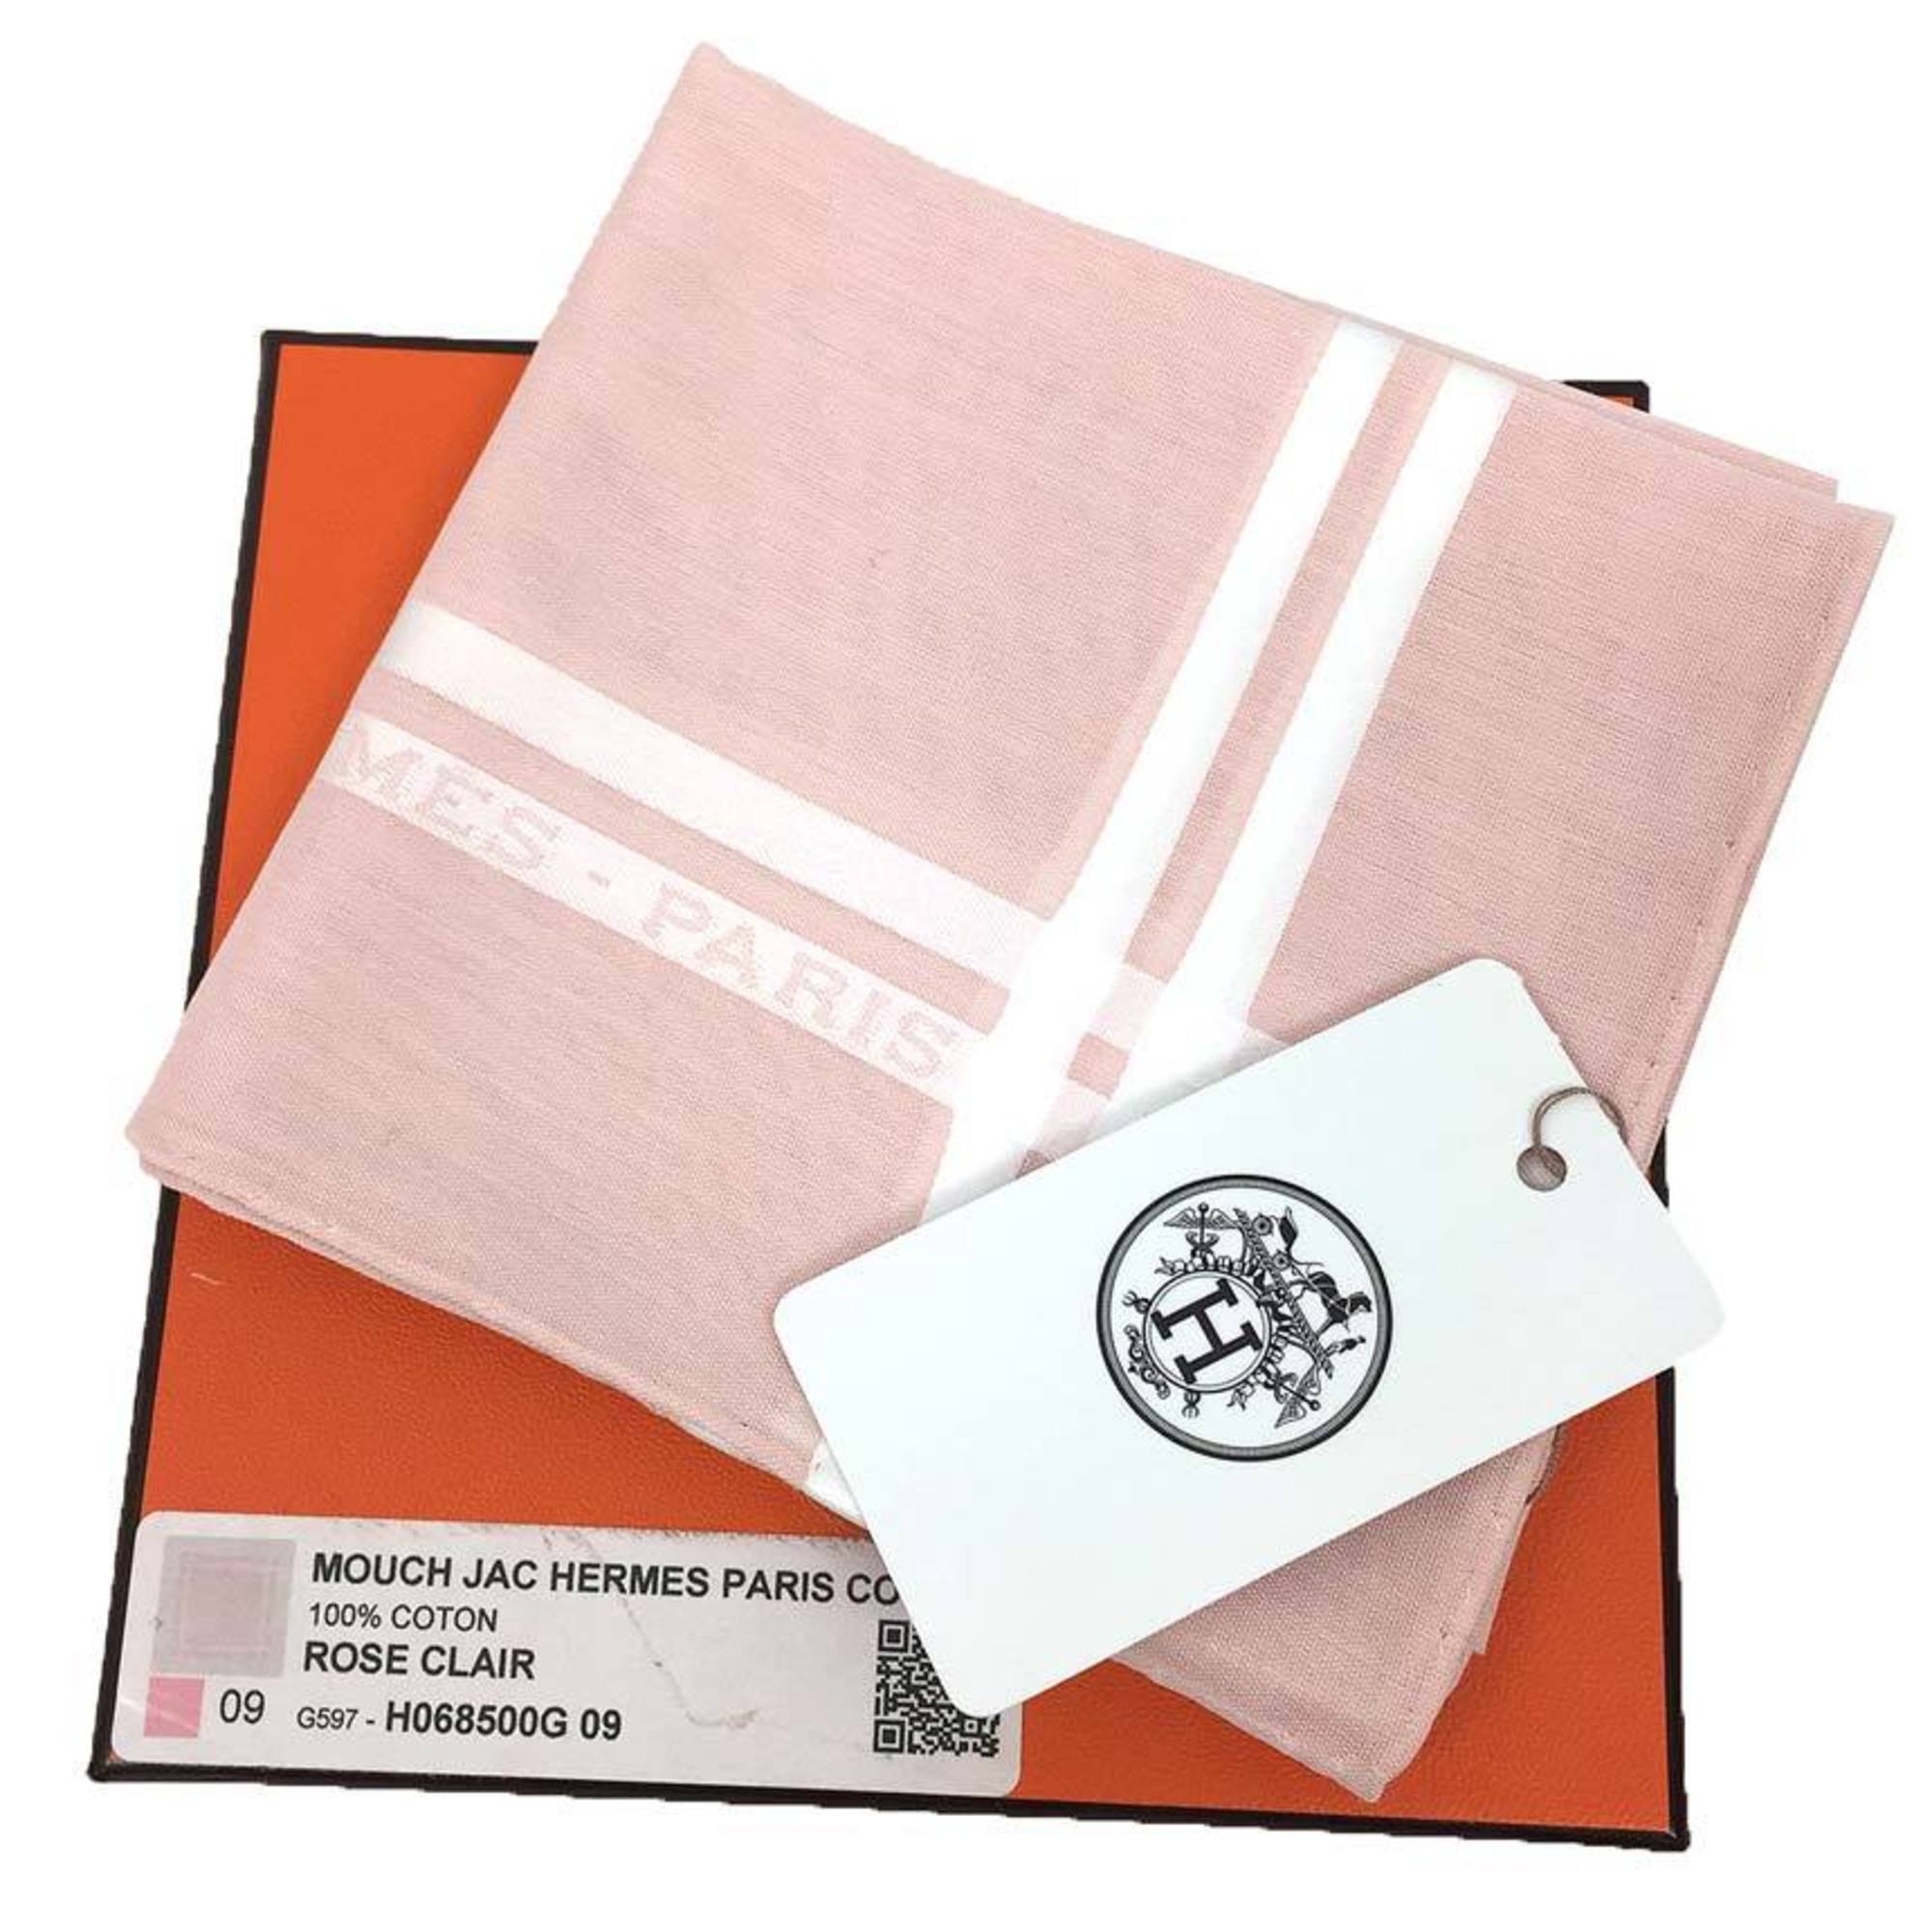 HERMES handkerchief MOUCH JACHERMES PARIS 100% cotton ROSE CLAIR pink H068500G 09 pocket square neckerchief bandana aq10032